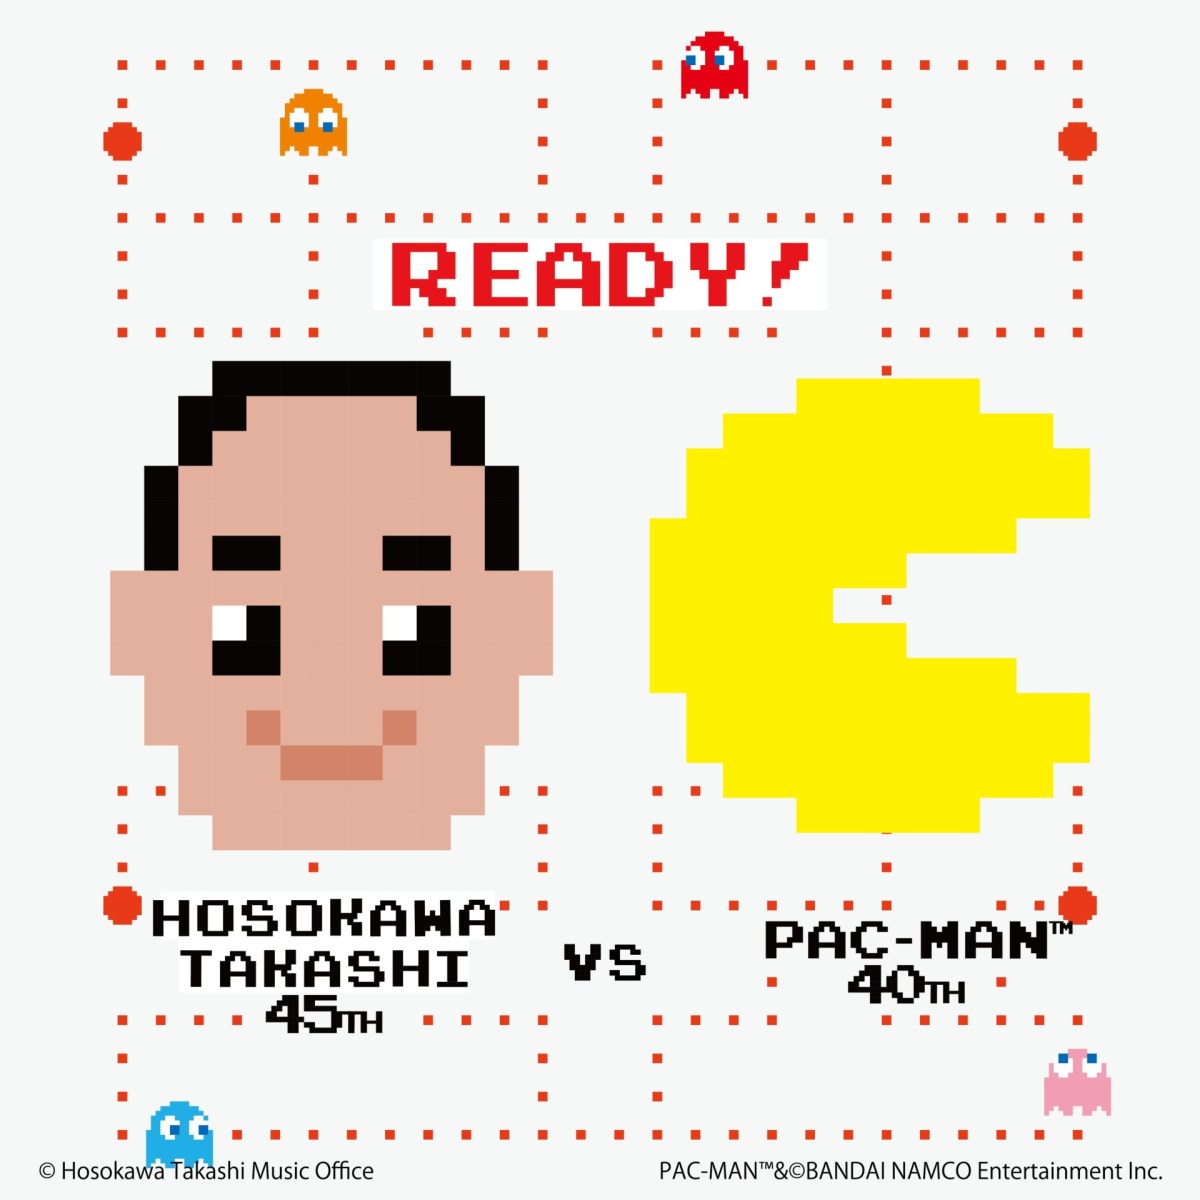 Pac-Man sake Hosokawa Takashi